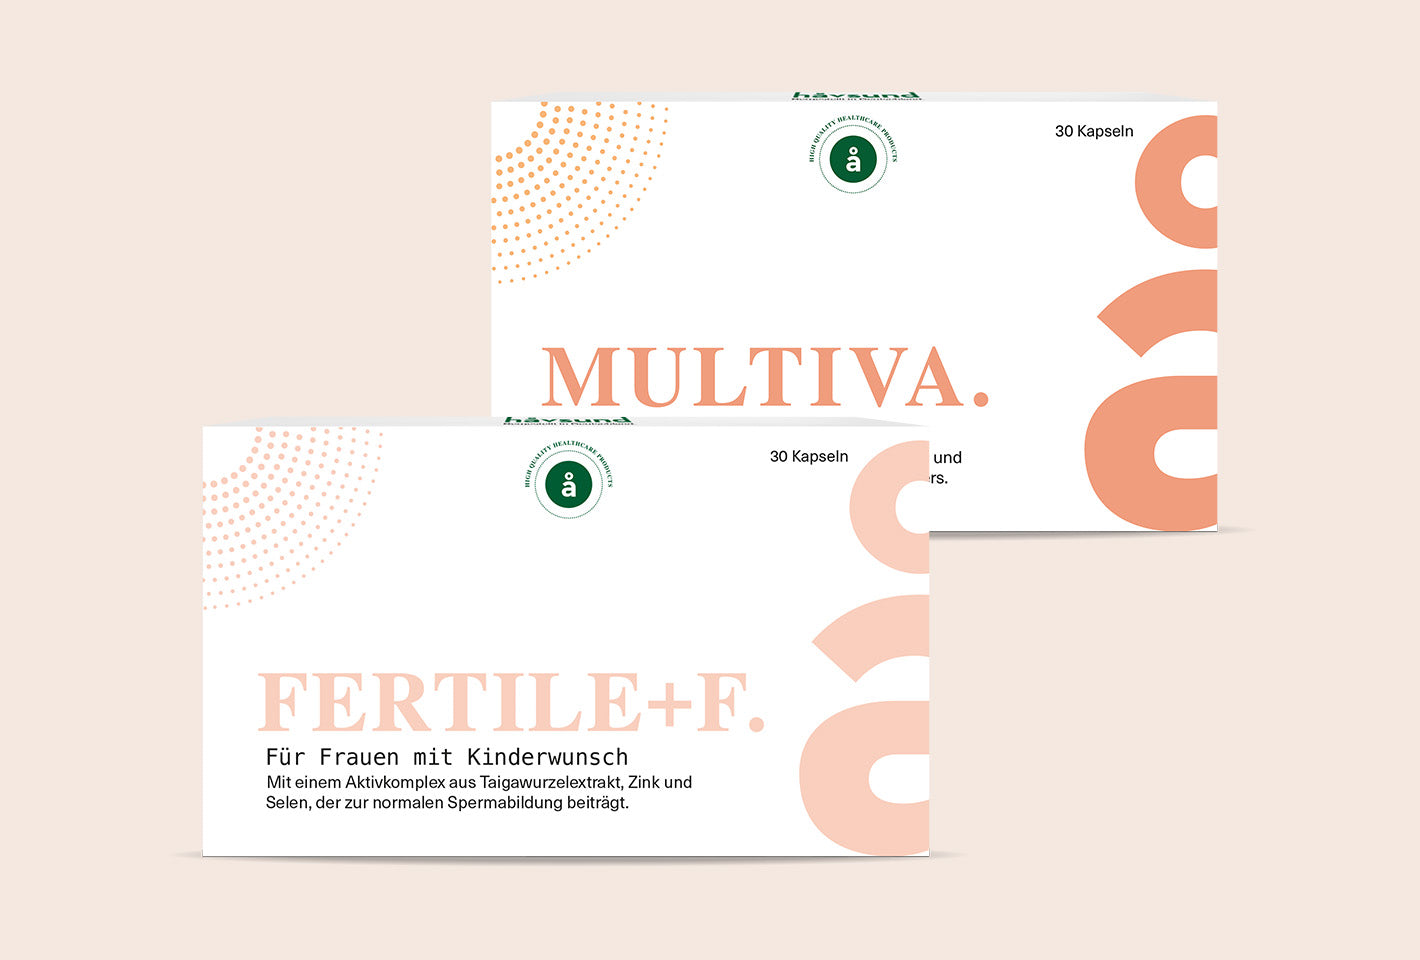 håvsund Fertile+F &amp; Multiva